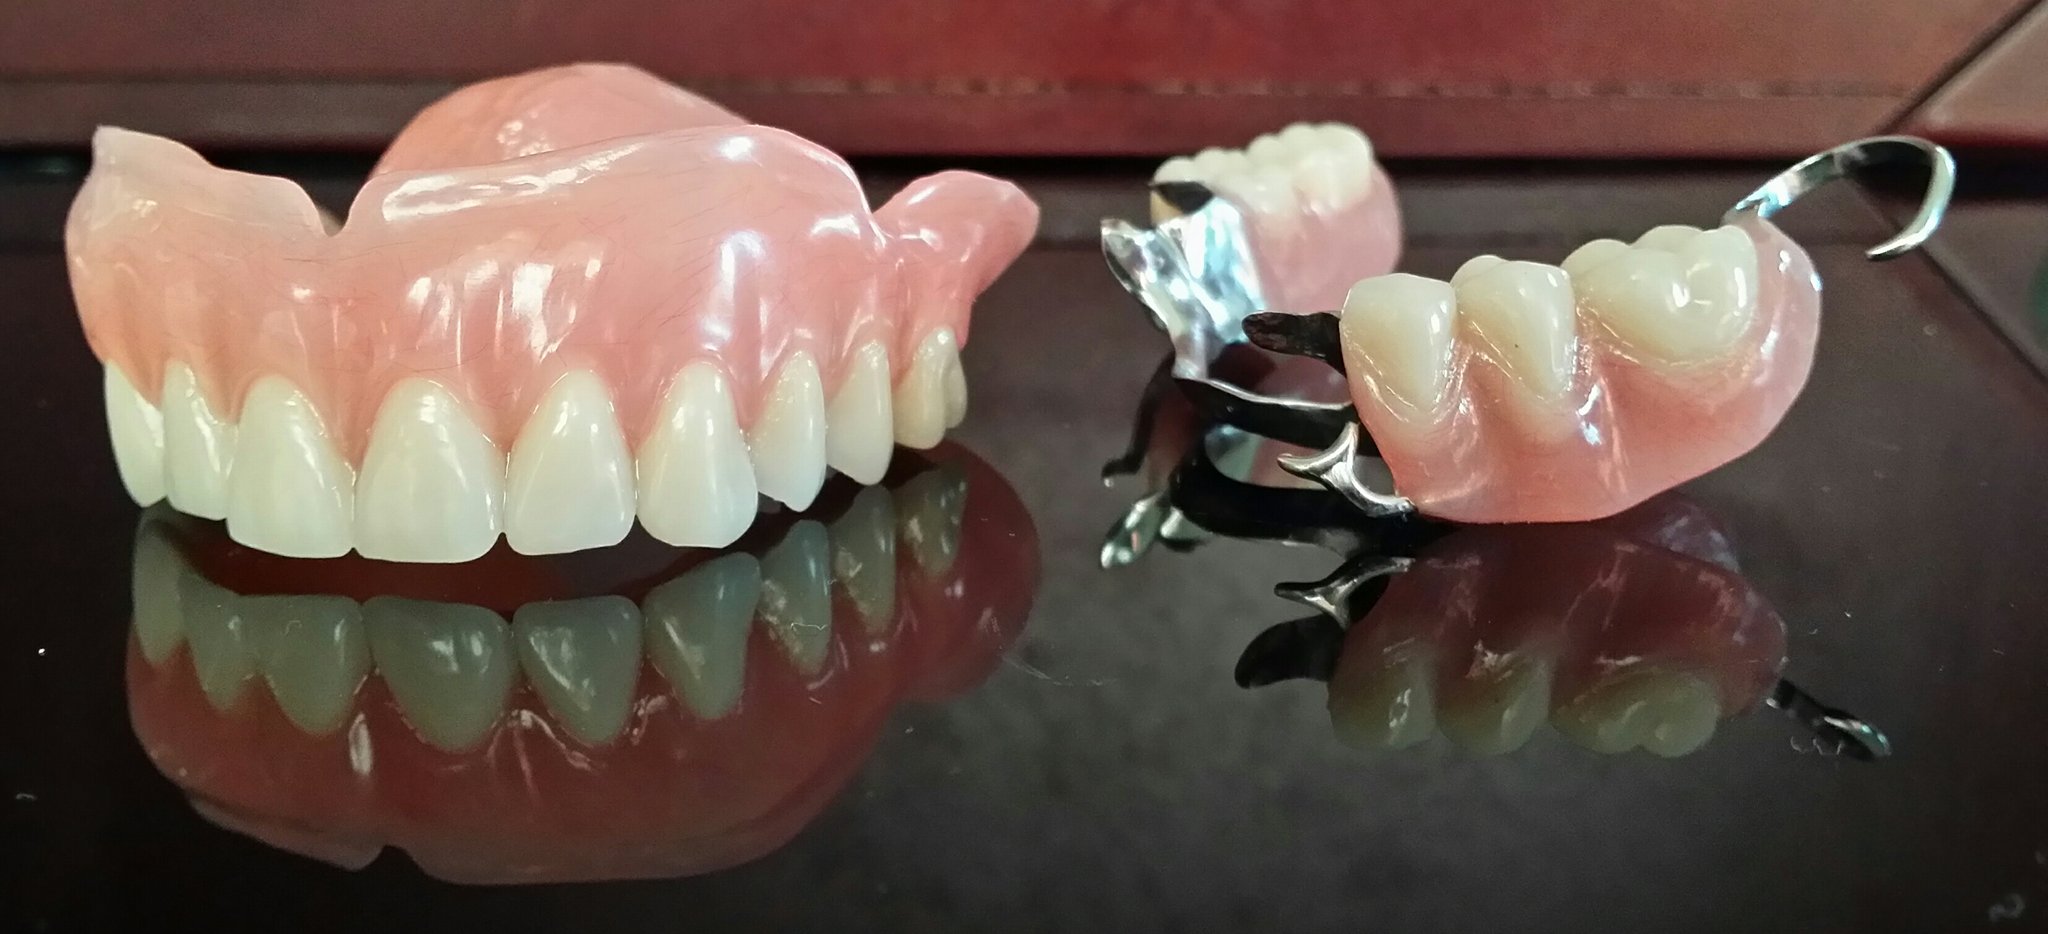 Les prothèses dentaires amovibles